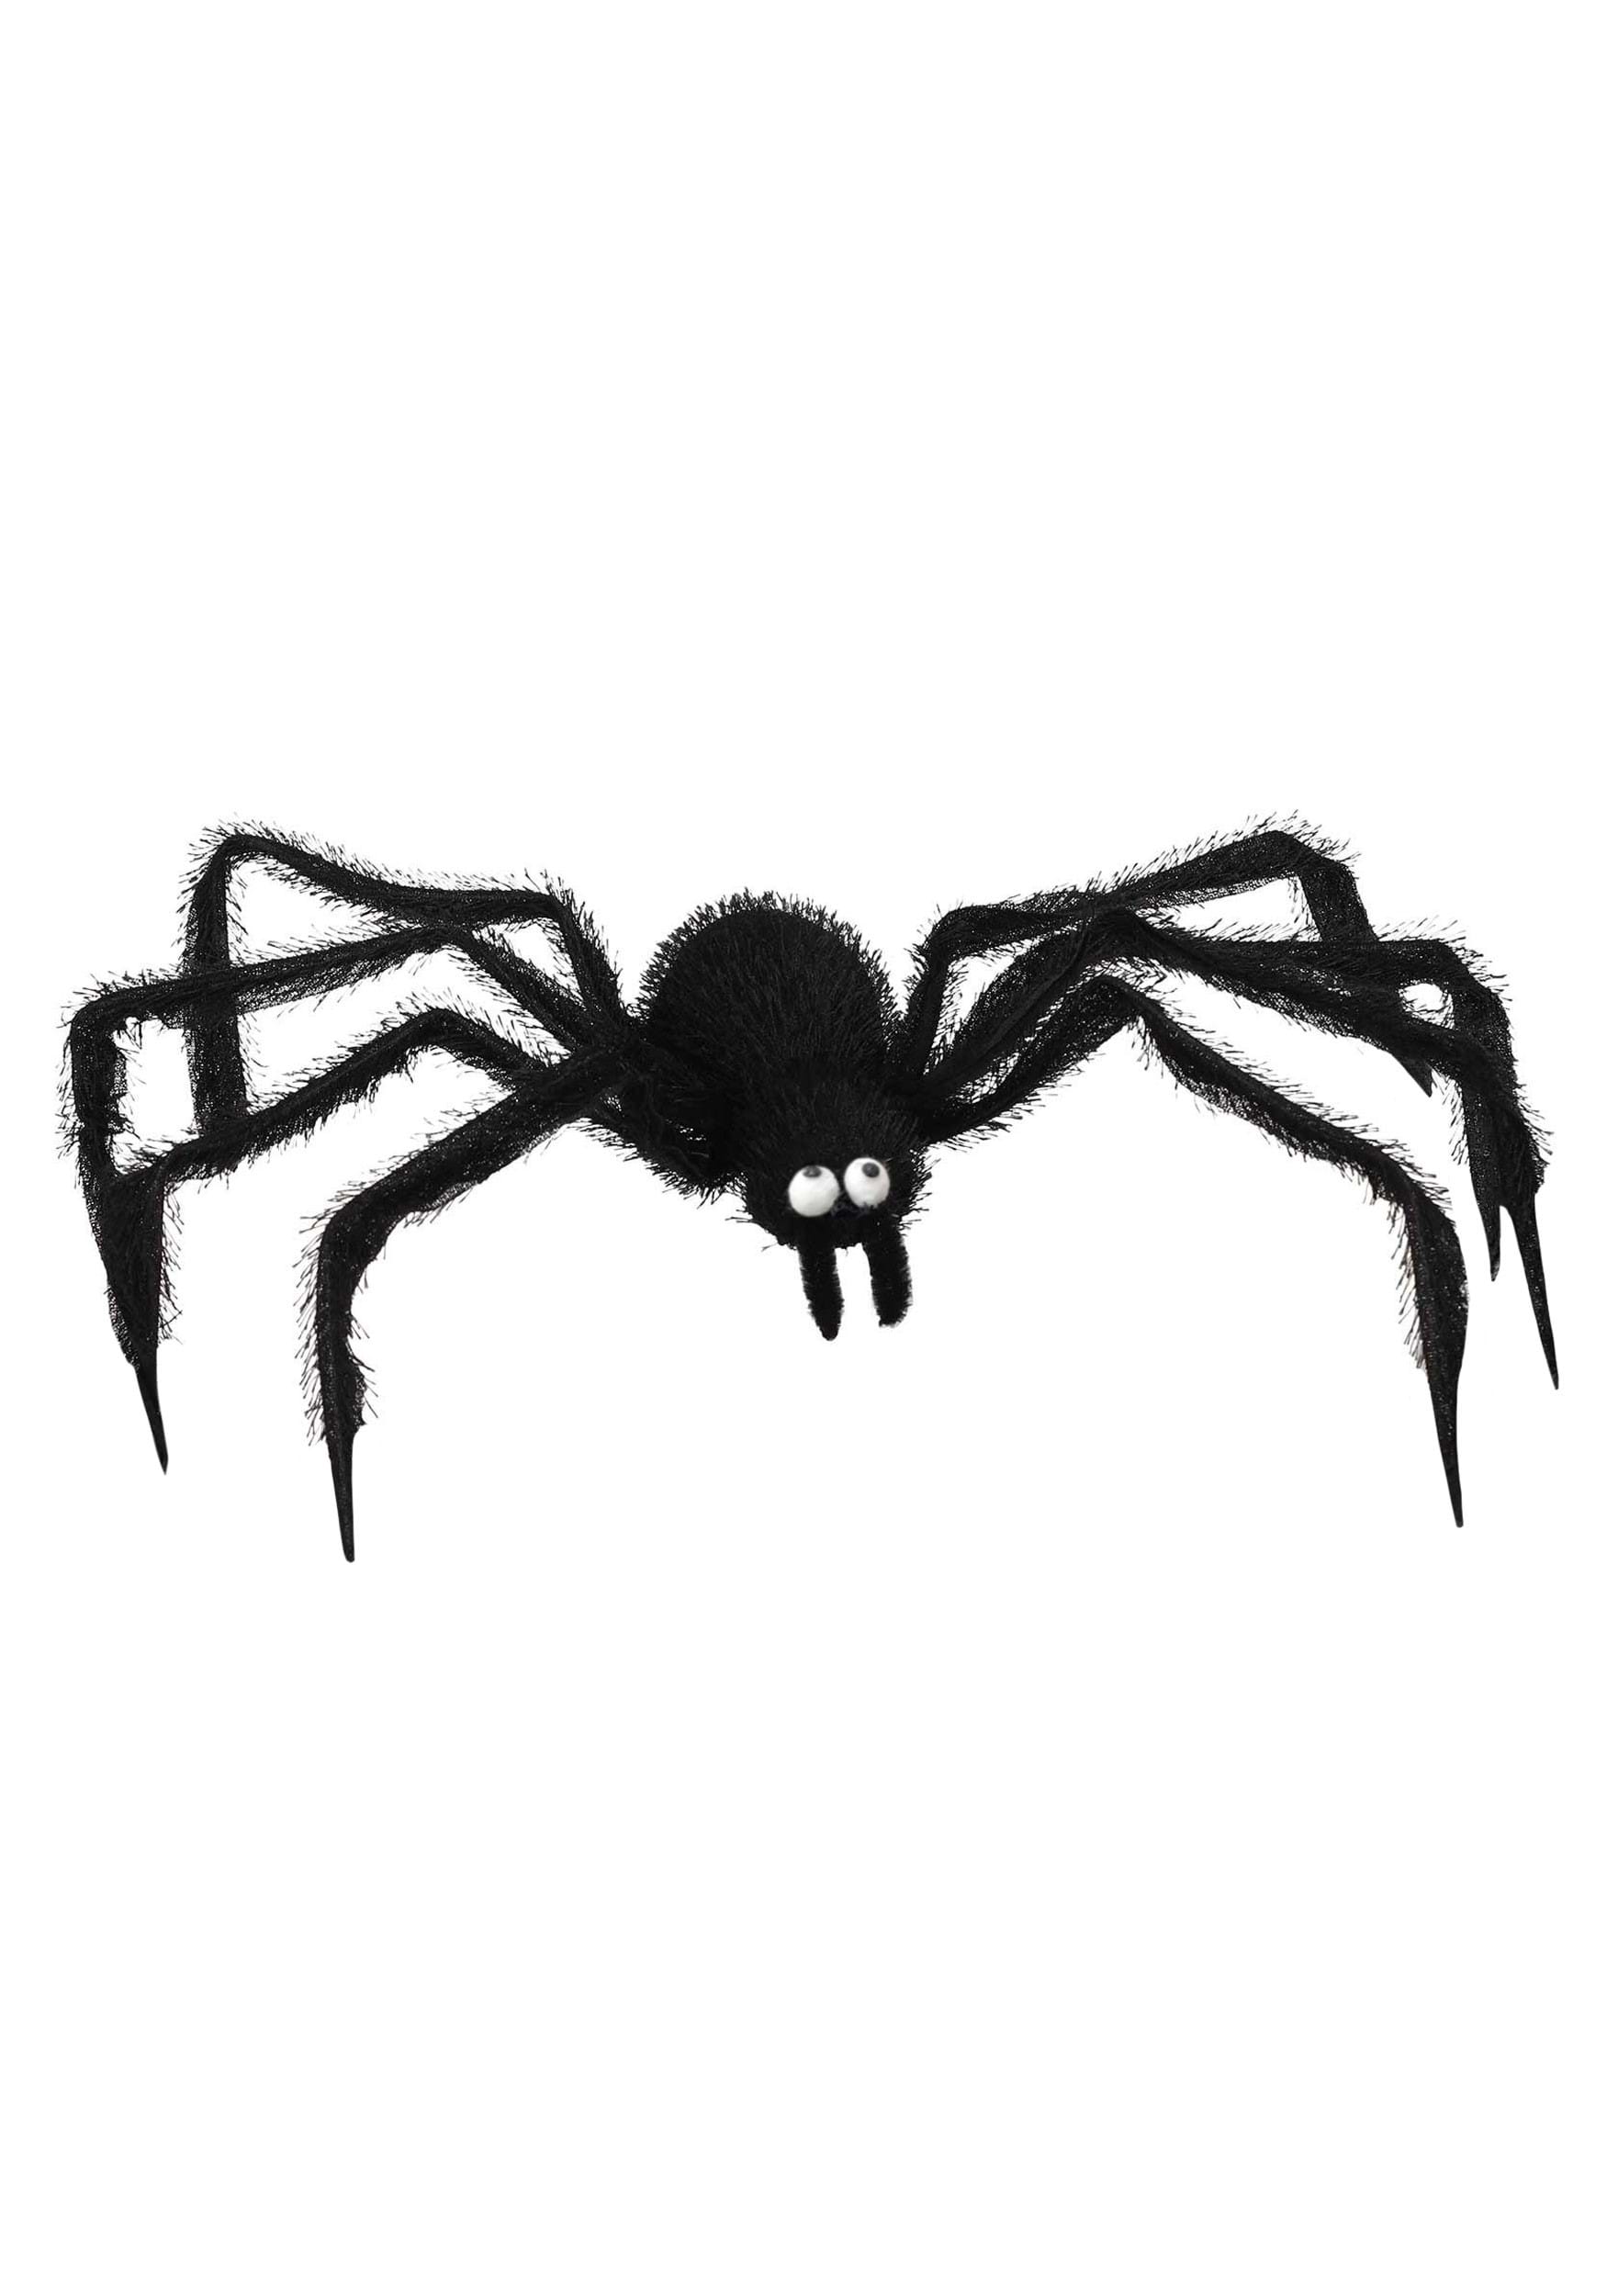 24 Inch Black Spider Halloween Prop | Halloween Decorations